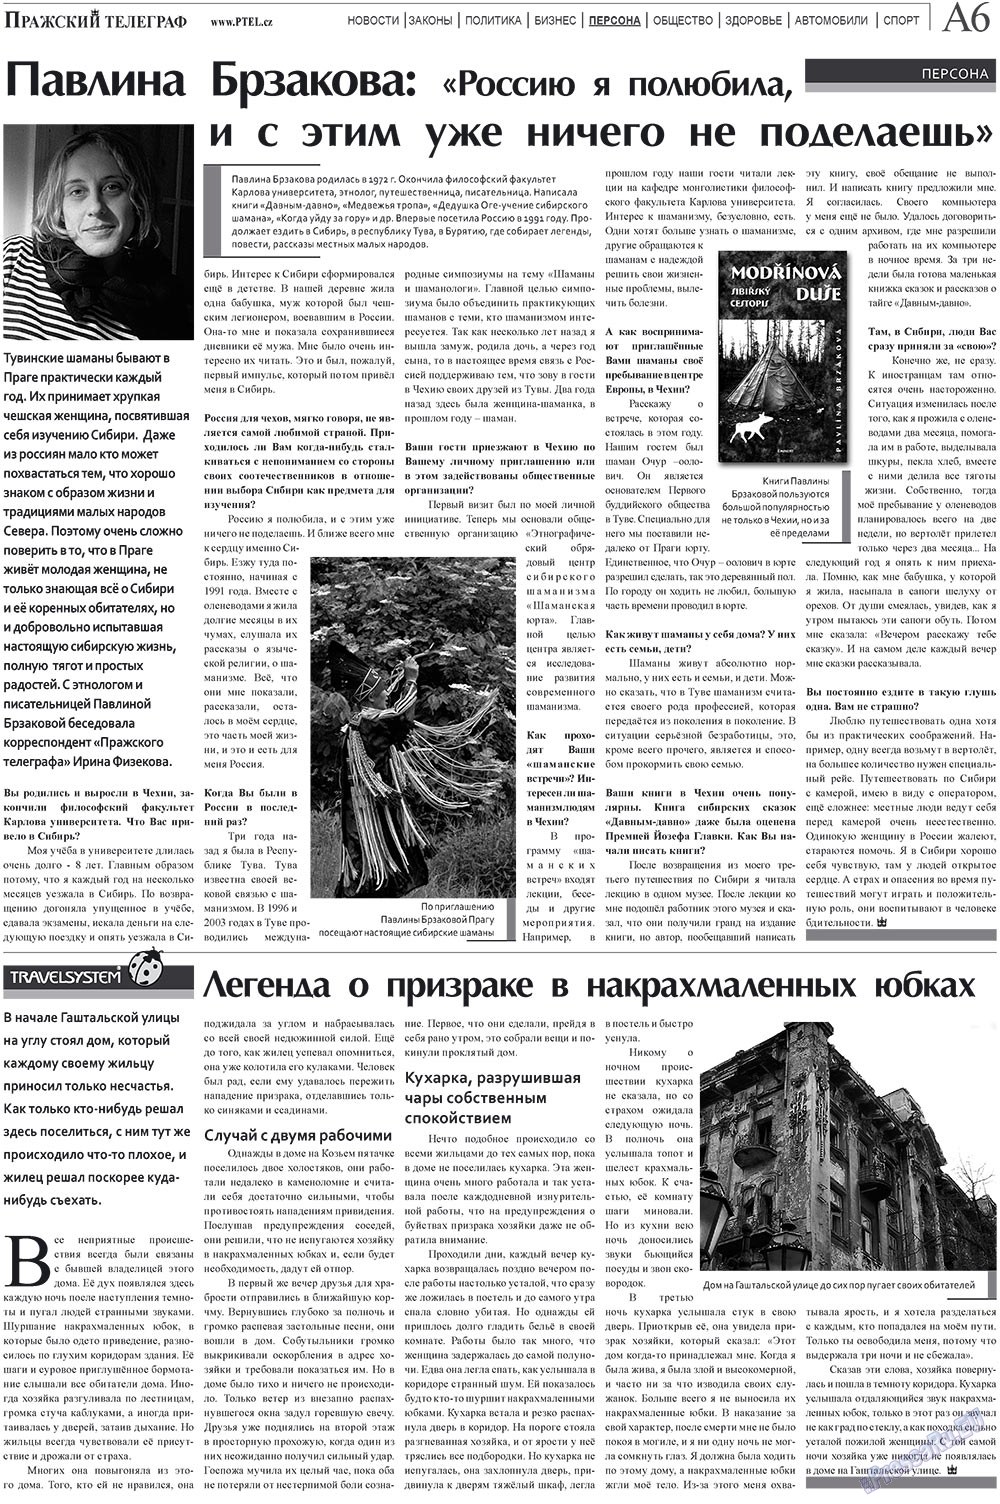 Пражский телеграф (газета). 2009 год, номер 32, стр. 6